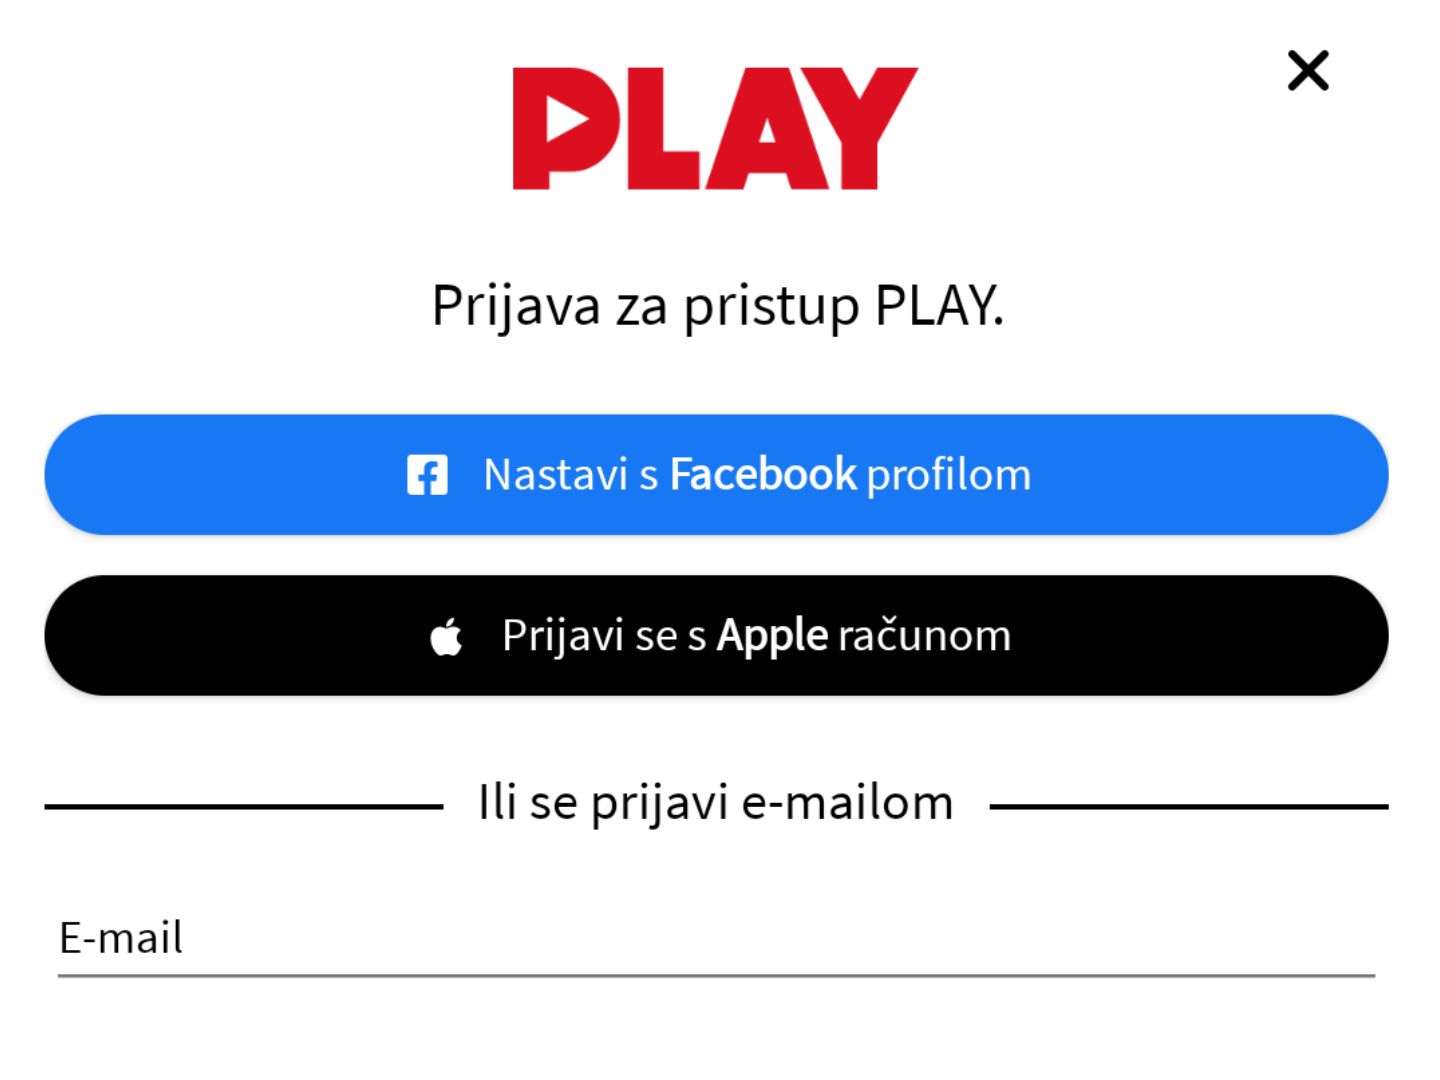 Otvorena aplikacija RTL Play na mobitelu u koju se preba prijaviti